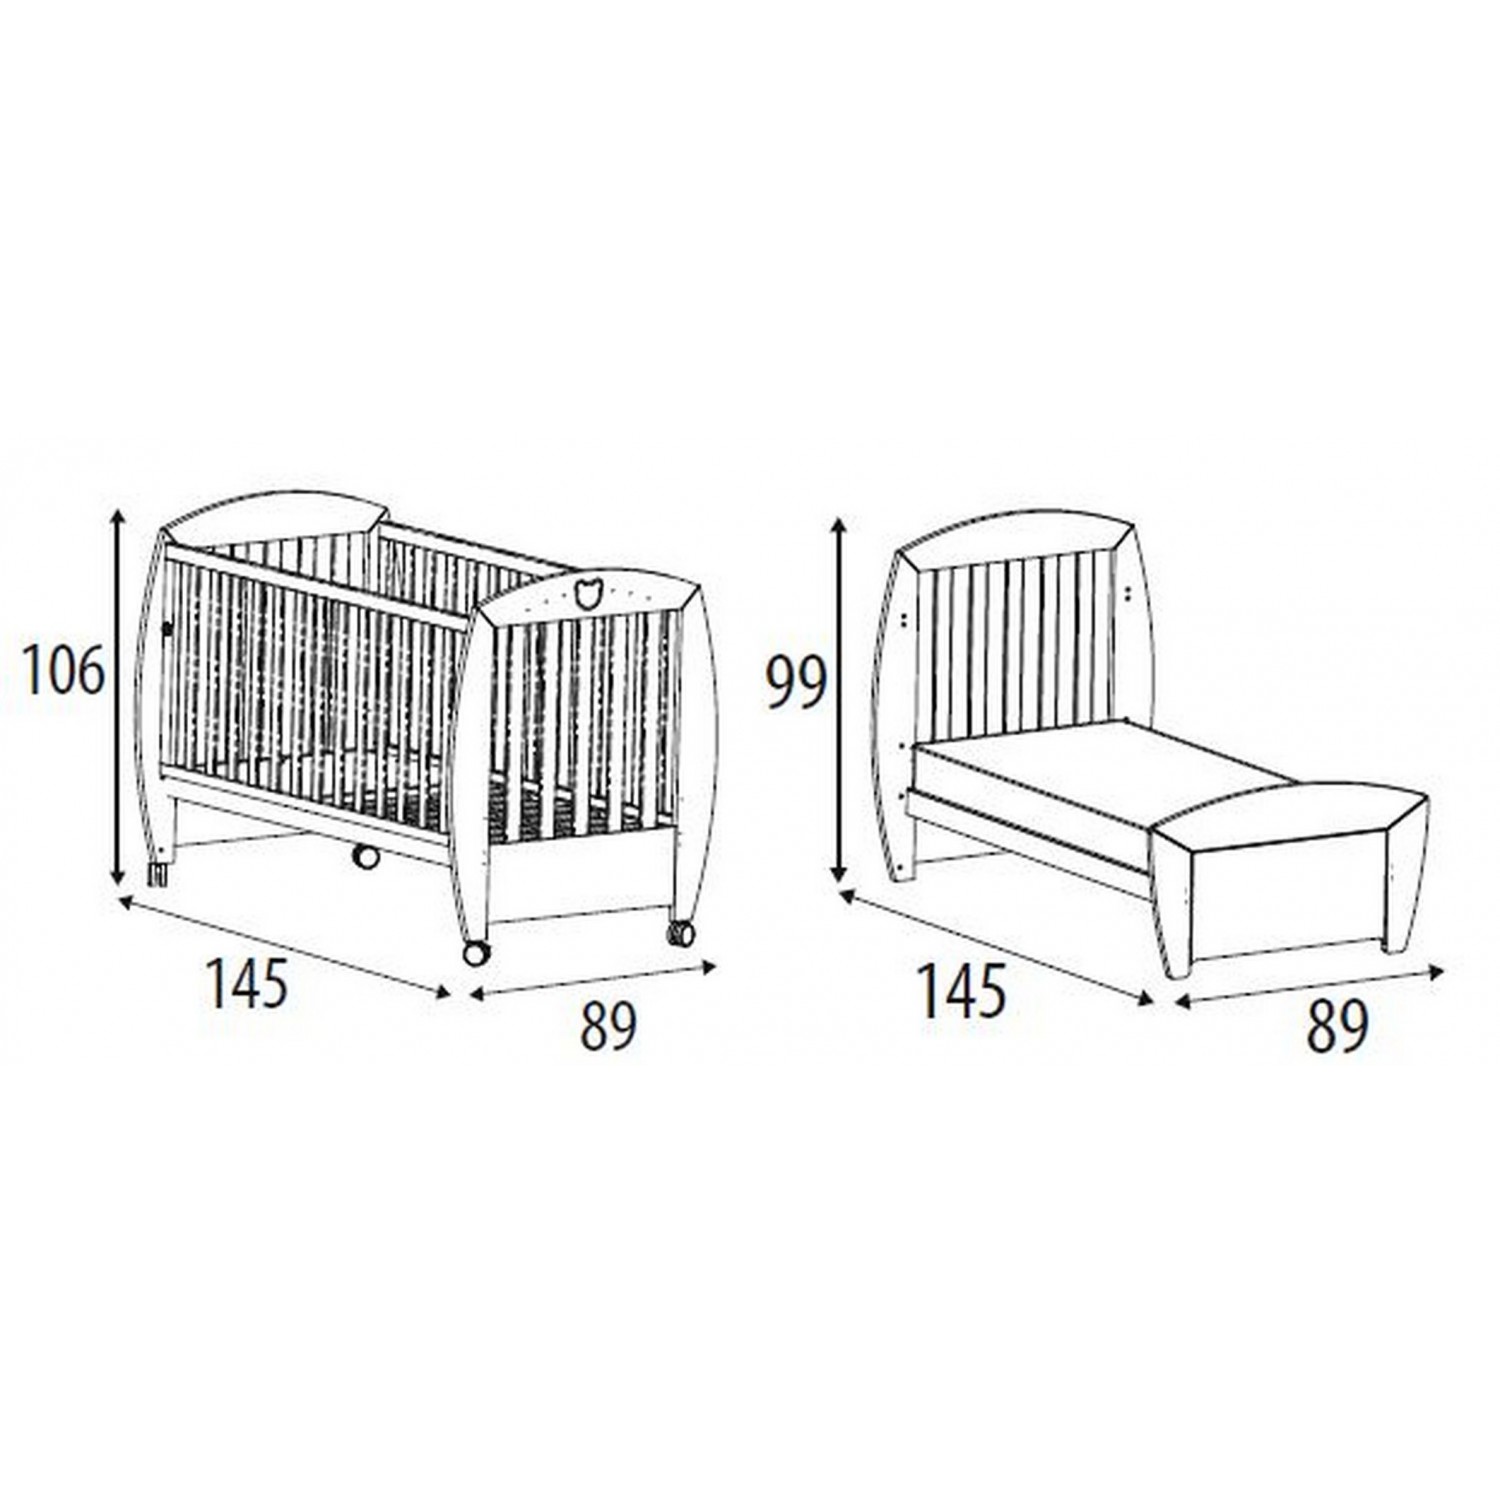 размеры детской кровати для новорожденного стандартный